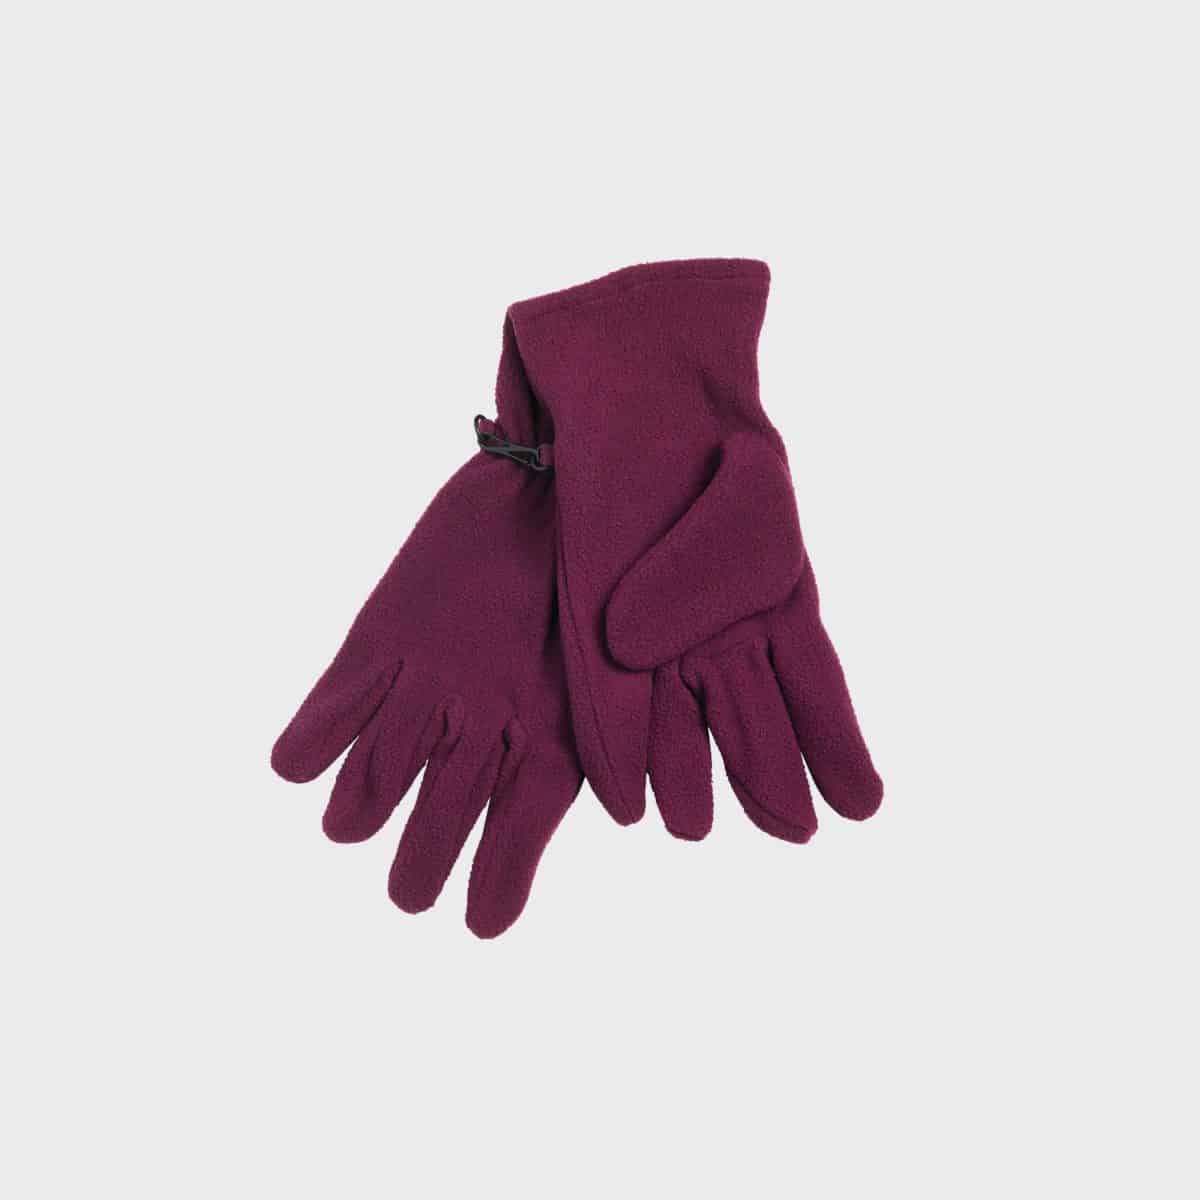 microfleece-handschuhe-violet-kaufen-besticken_stickmanufaktur